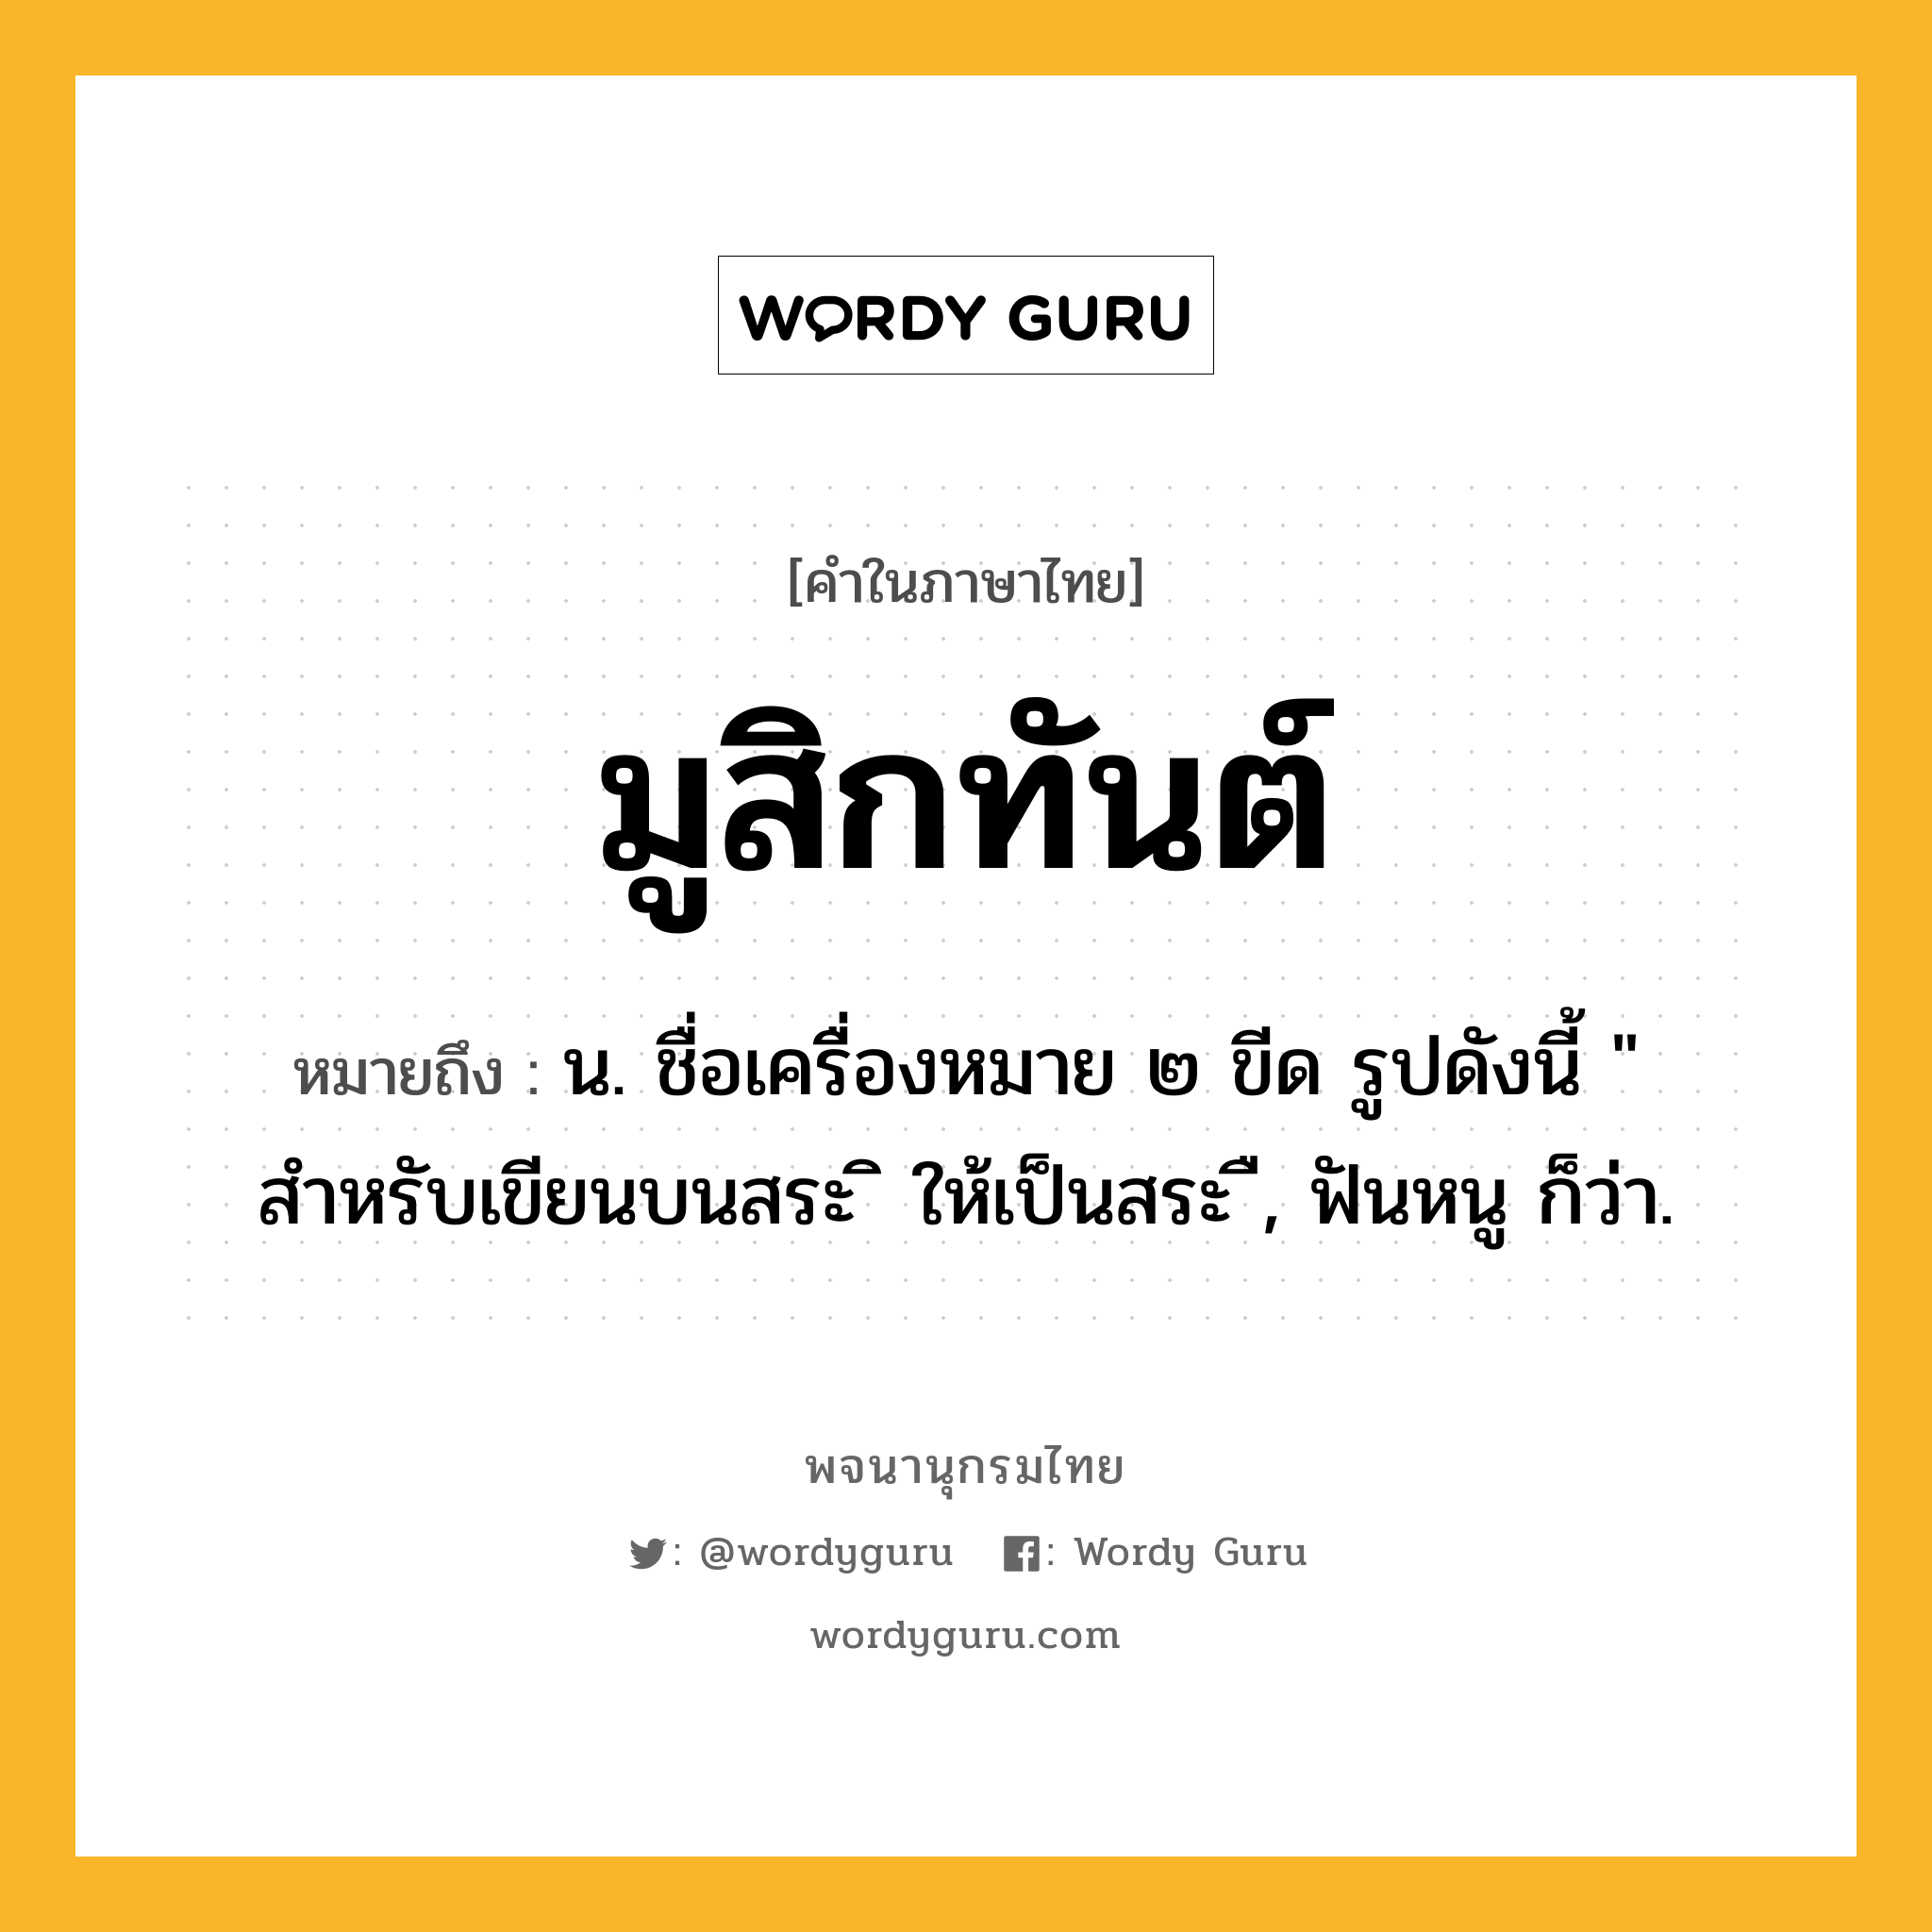 มูสิกทันต์ หมายถึงอะไร?, คำในภาษาไทย มูสิกทันต์ หมายถึง น. ชื่อเครื่องหมาย ๒ ขีด รูปดังนี้ " สำหรับเขียนบนสระ ิ ให้เป็นสระ ื, ฟันหนู ก็ว่า.